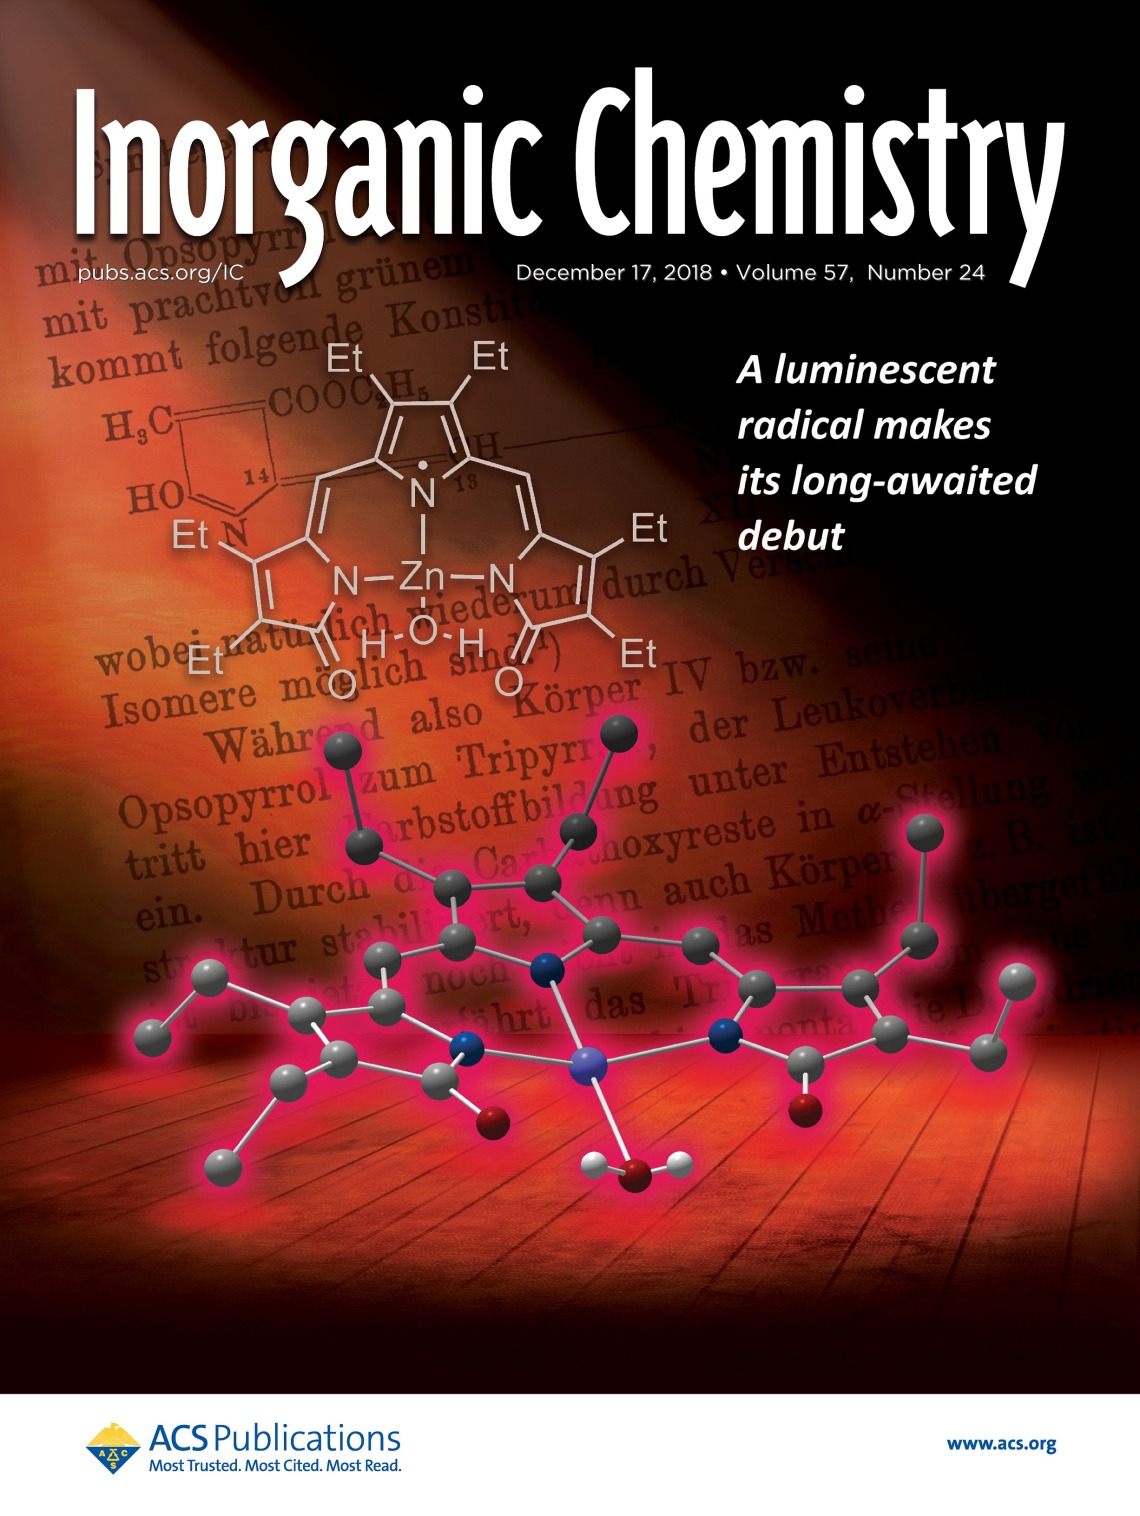 Cover art for Inorganic Chemistry, December 2018